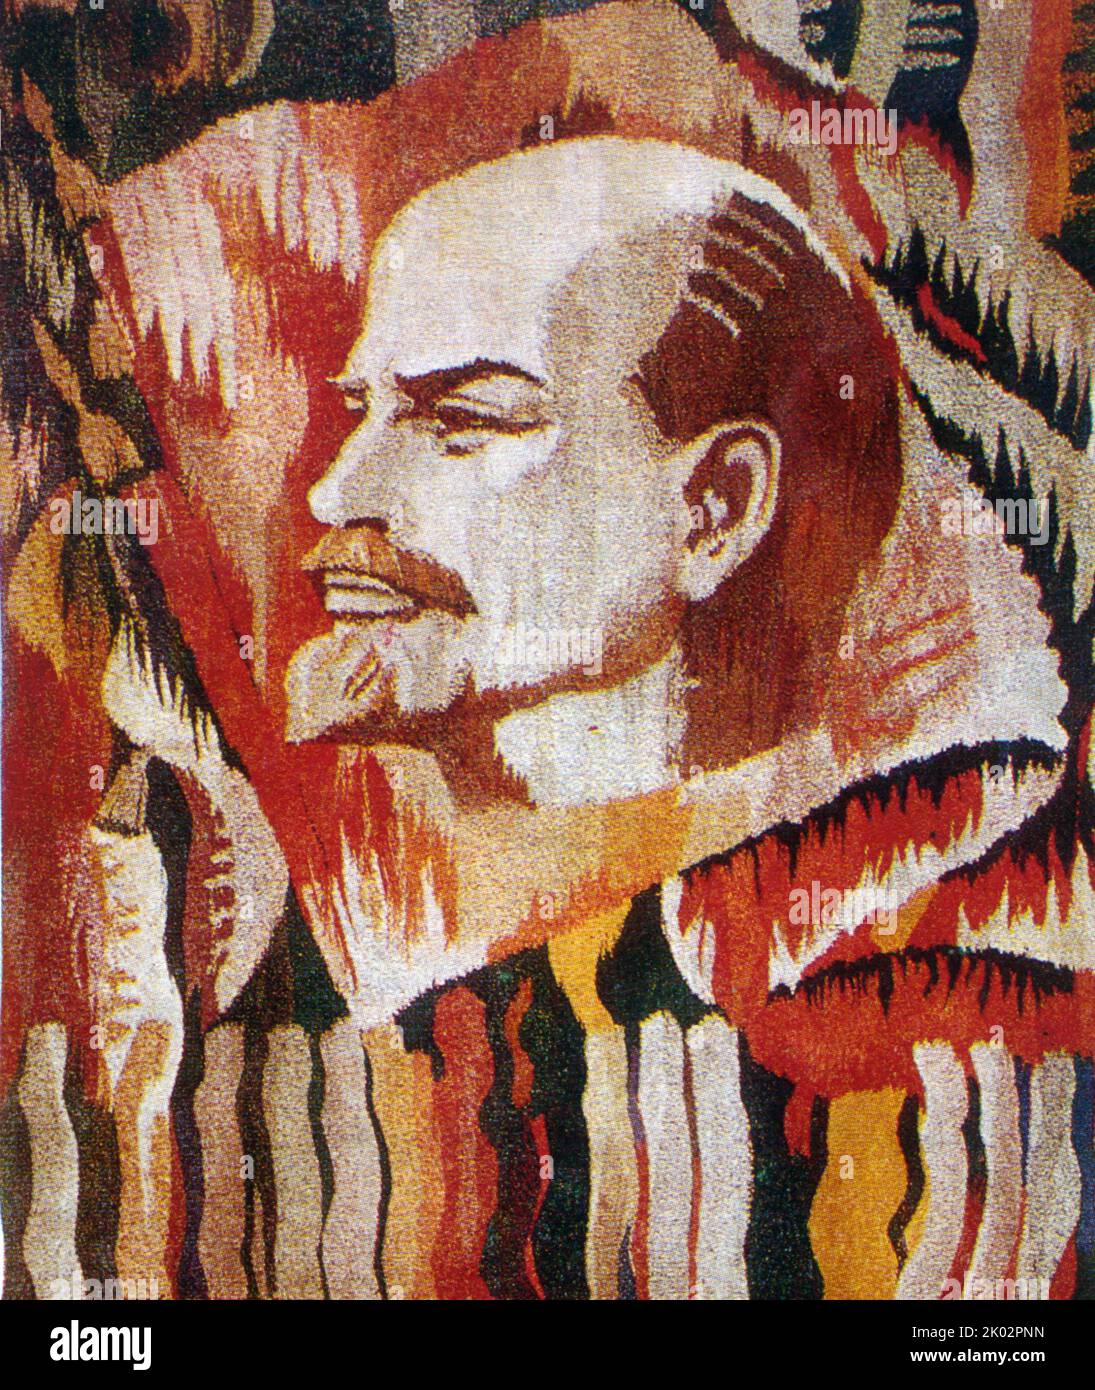 Wandteppich mit Wladimir Lenin, dem sowjetischen Führer von 1917 bis 1924. Um 1975. Stockfoto